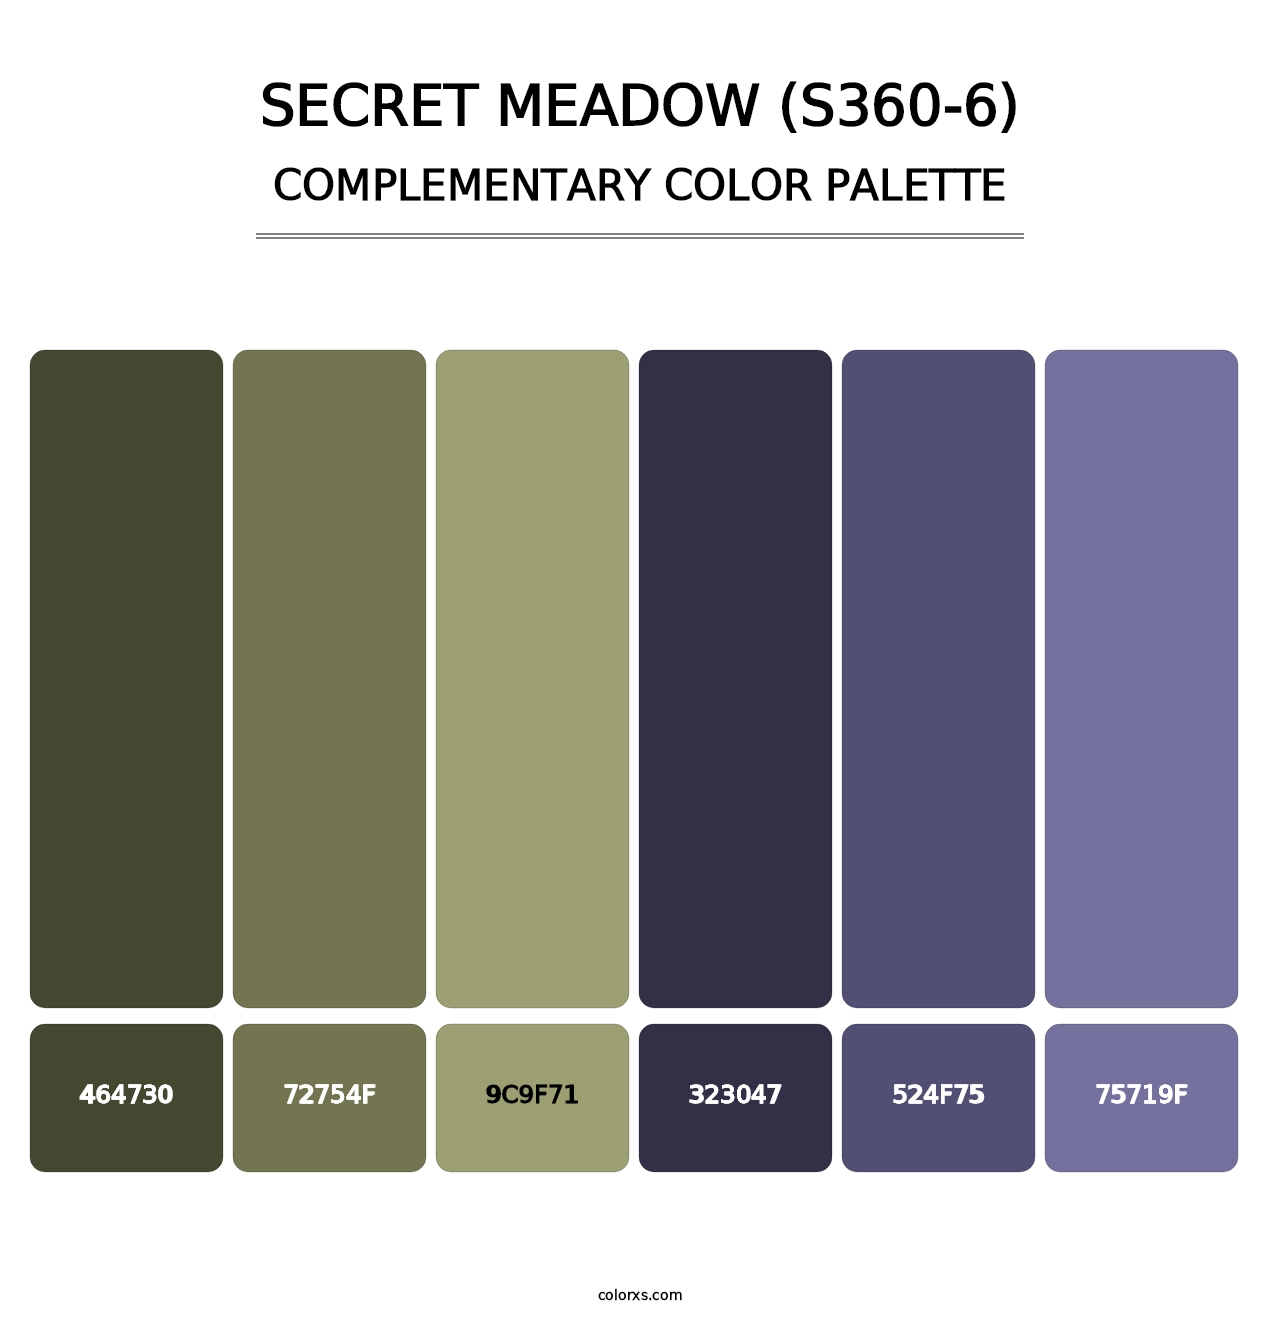 Secret Meadow (S360-6) - Complementary Color Palette